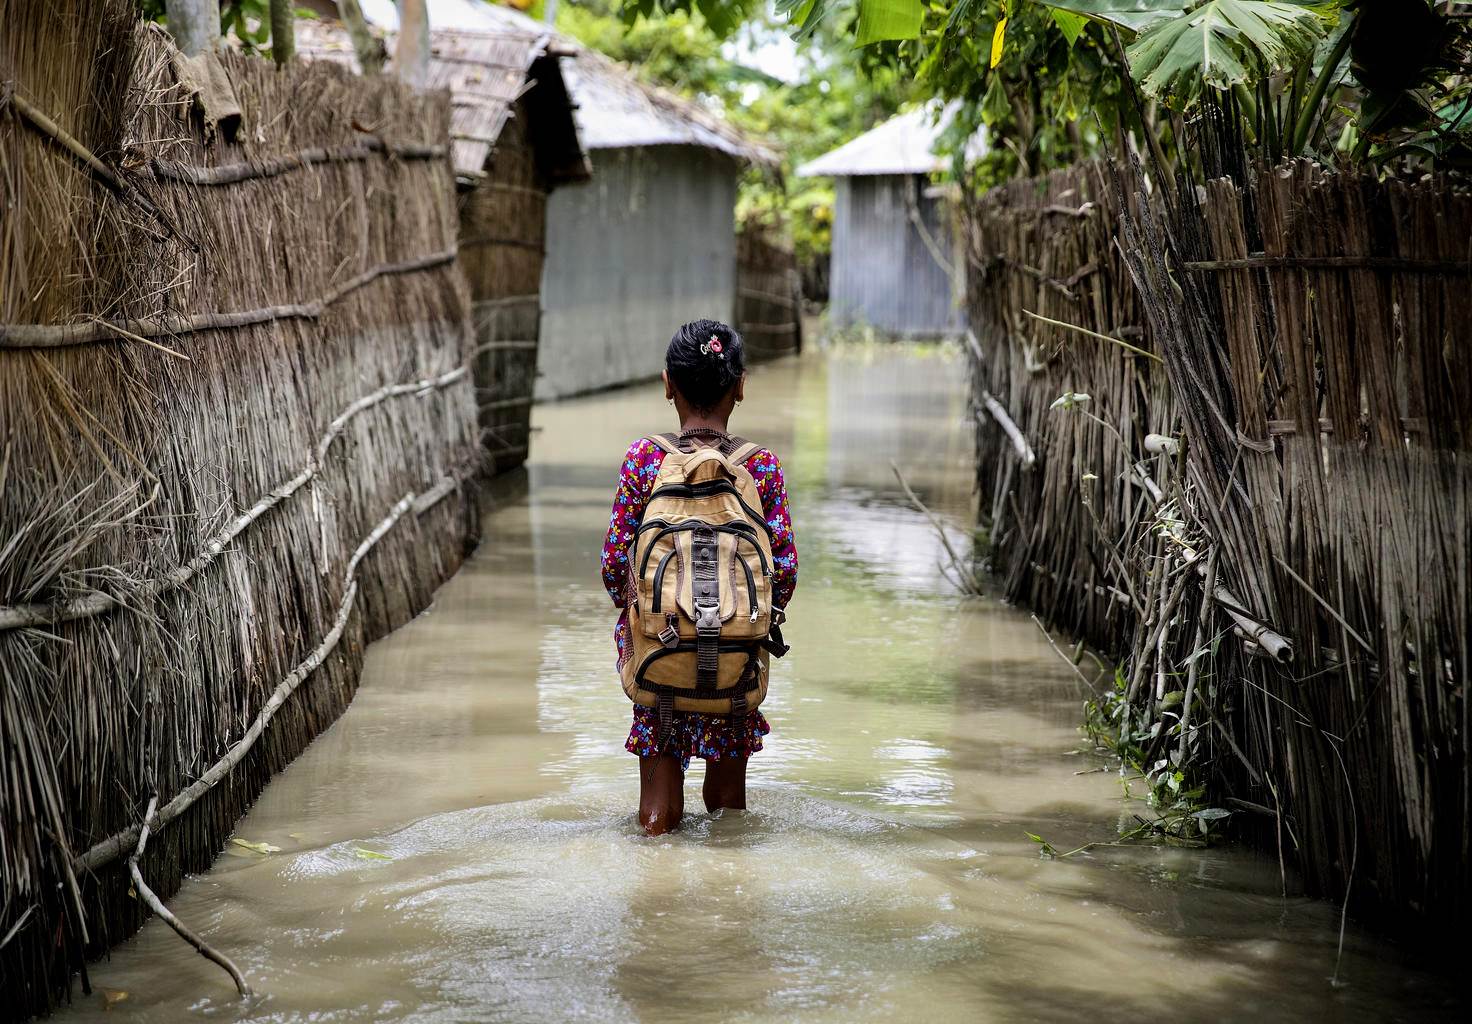 Ljósmynd frá Bangladess: Unicef. - mynd